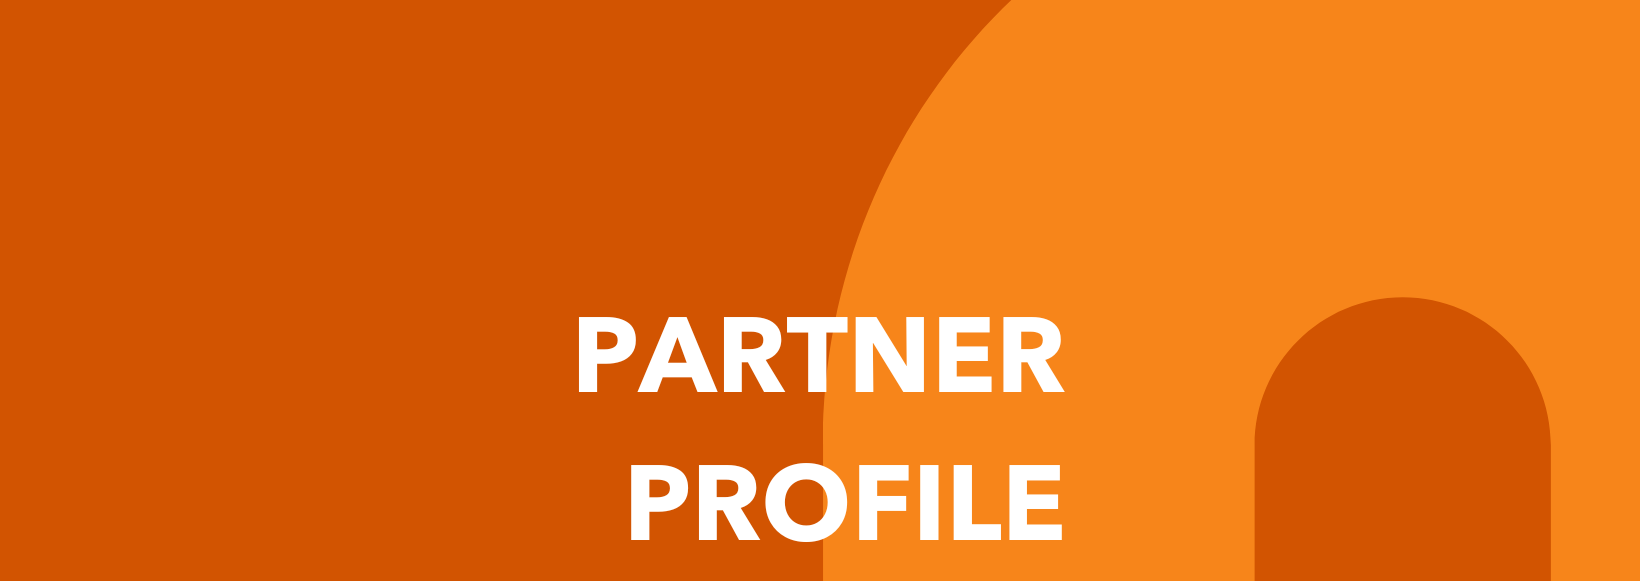 Partner Profile: Derechos Humanos y Diversidad Asociacion...